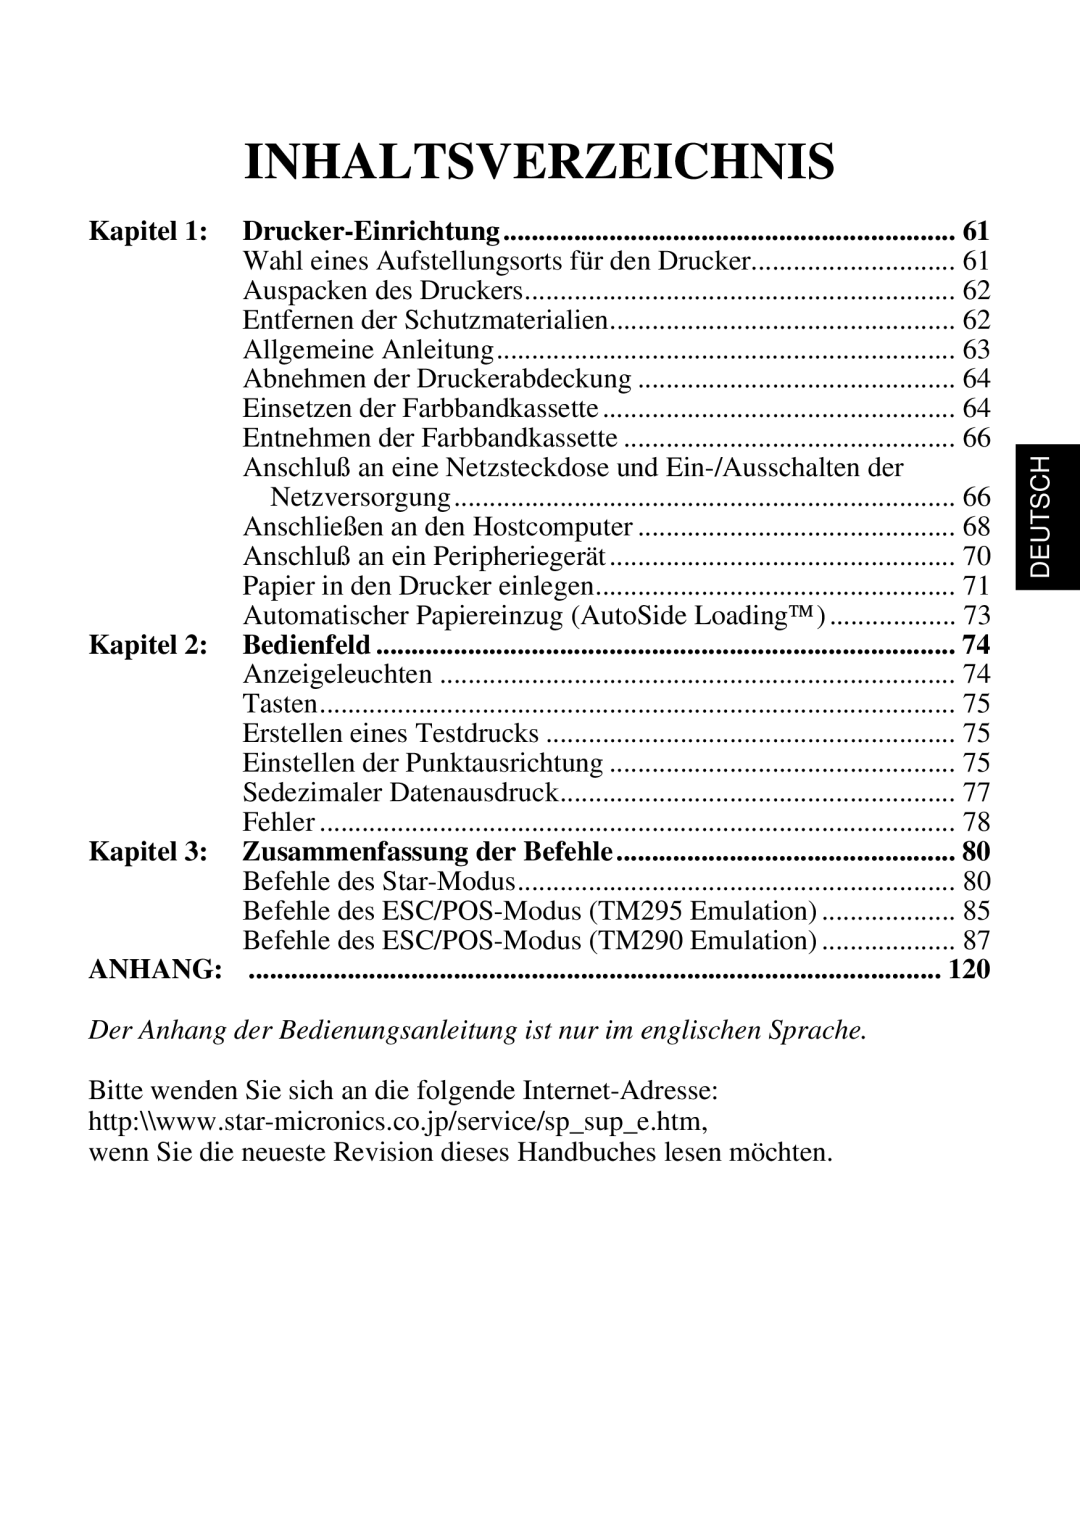 Star Micronics SP298 Inhaltsverzeichnis, Kapitel, Der Anhang der Bedienungsanleitung ist nur im englischen Sprache 